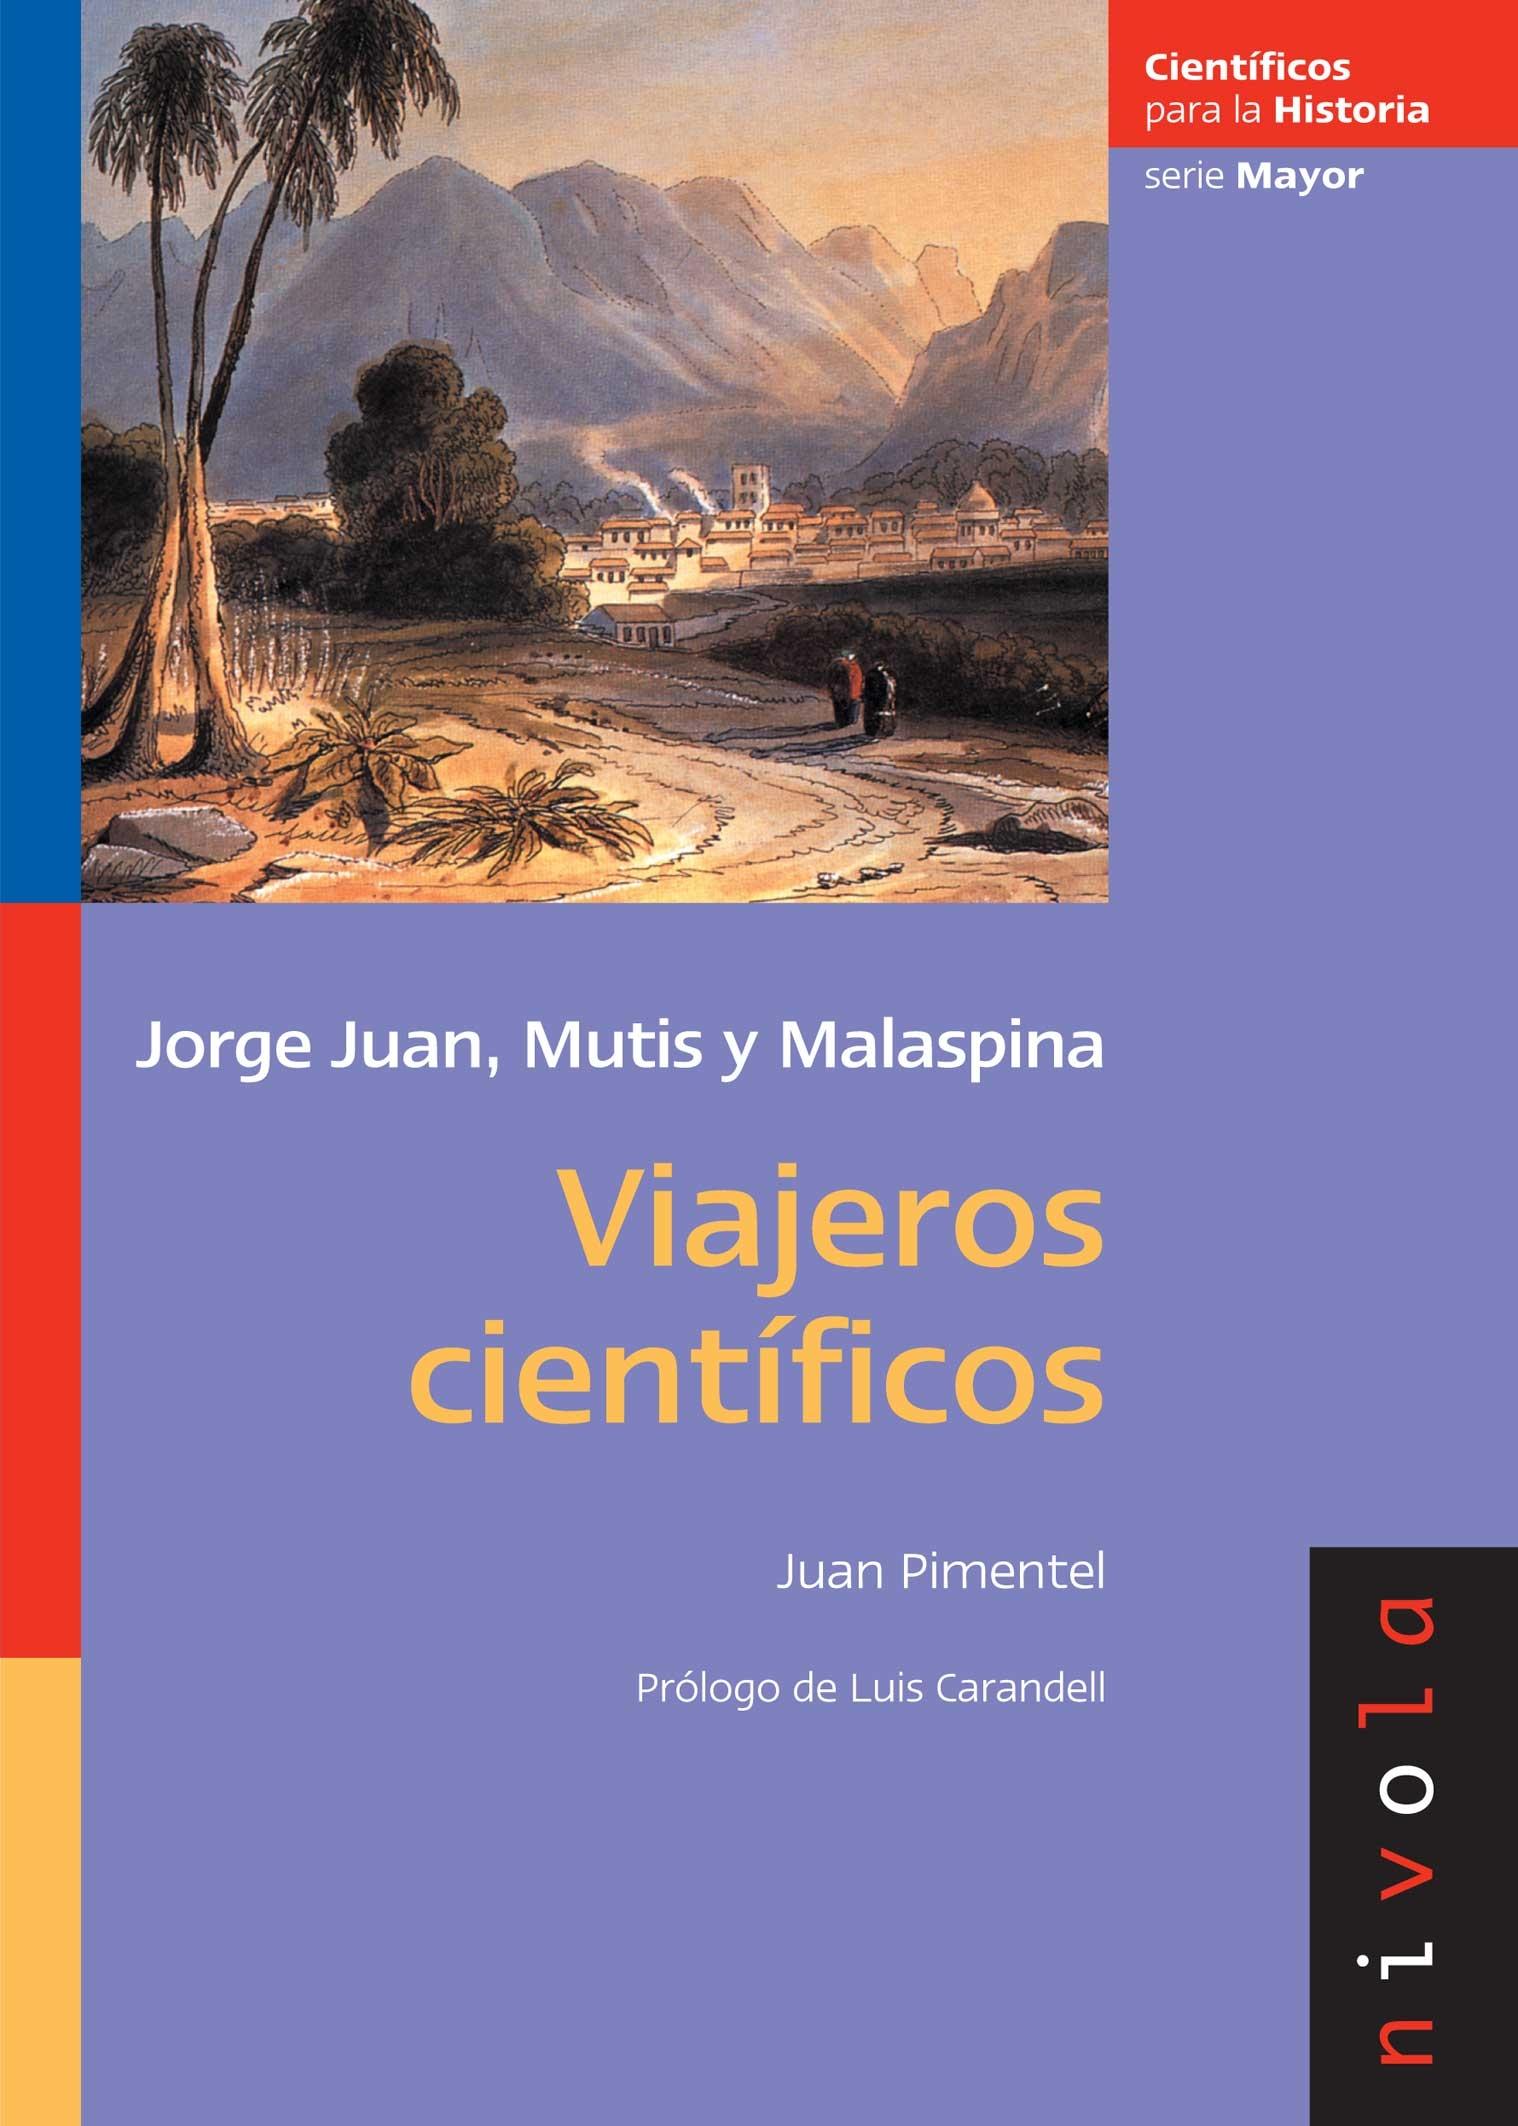 Viajeros científicos "Jorge Juan, Mutis y malaespina"